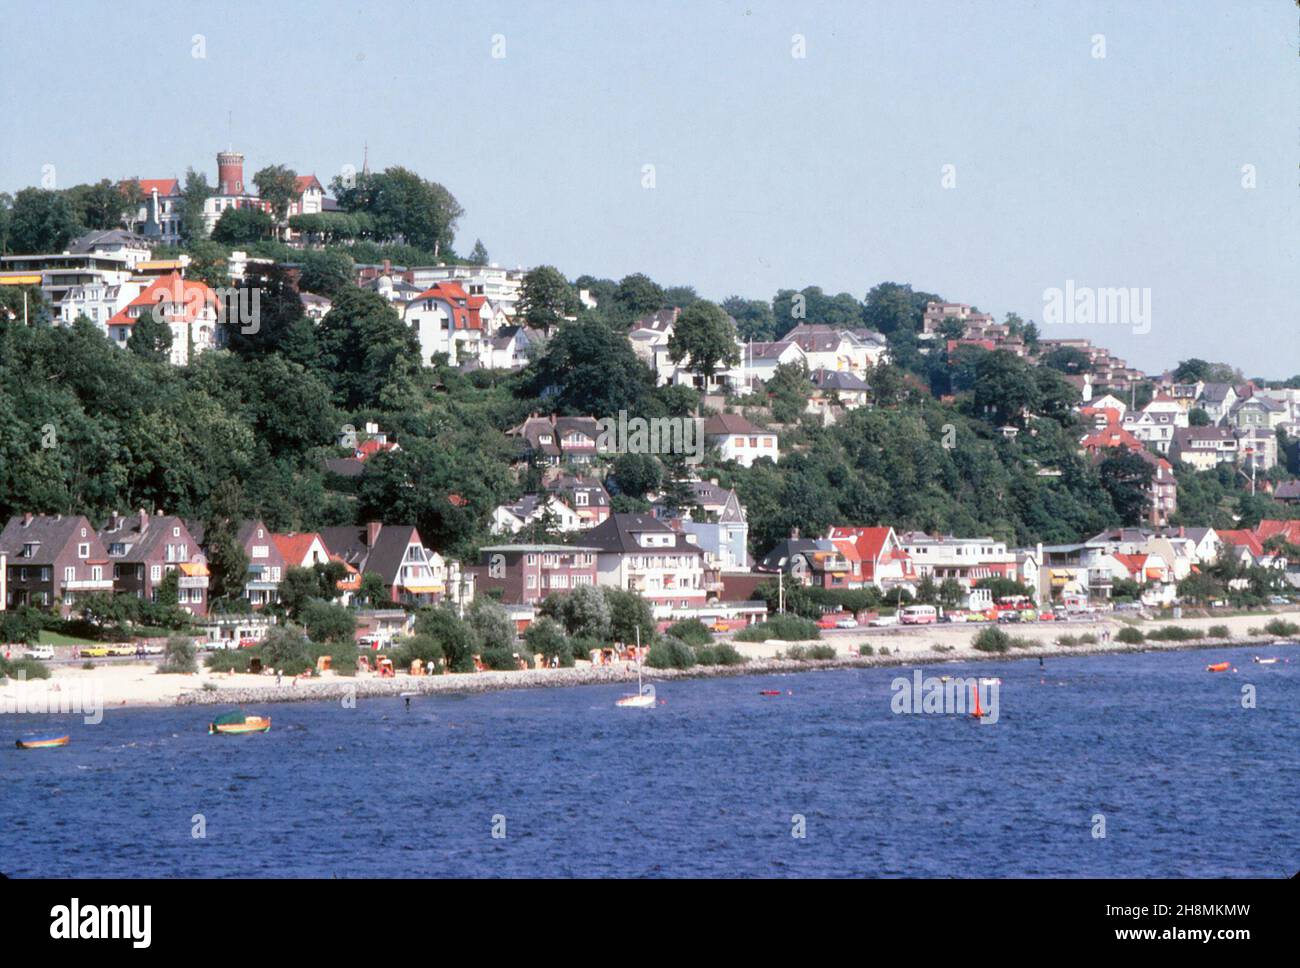 Amburgo - Blankenese, Hotel Süllberg in cima alla collina, sul fiume Elba, agosto 1978 Foto Stock